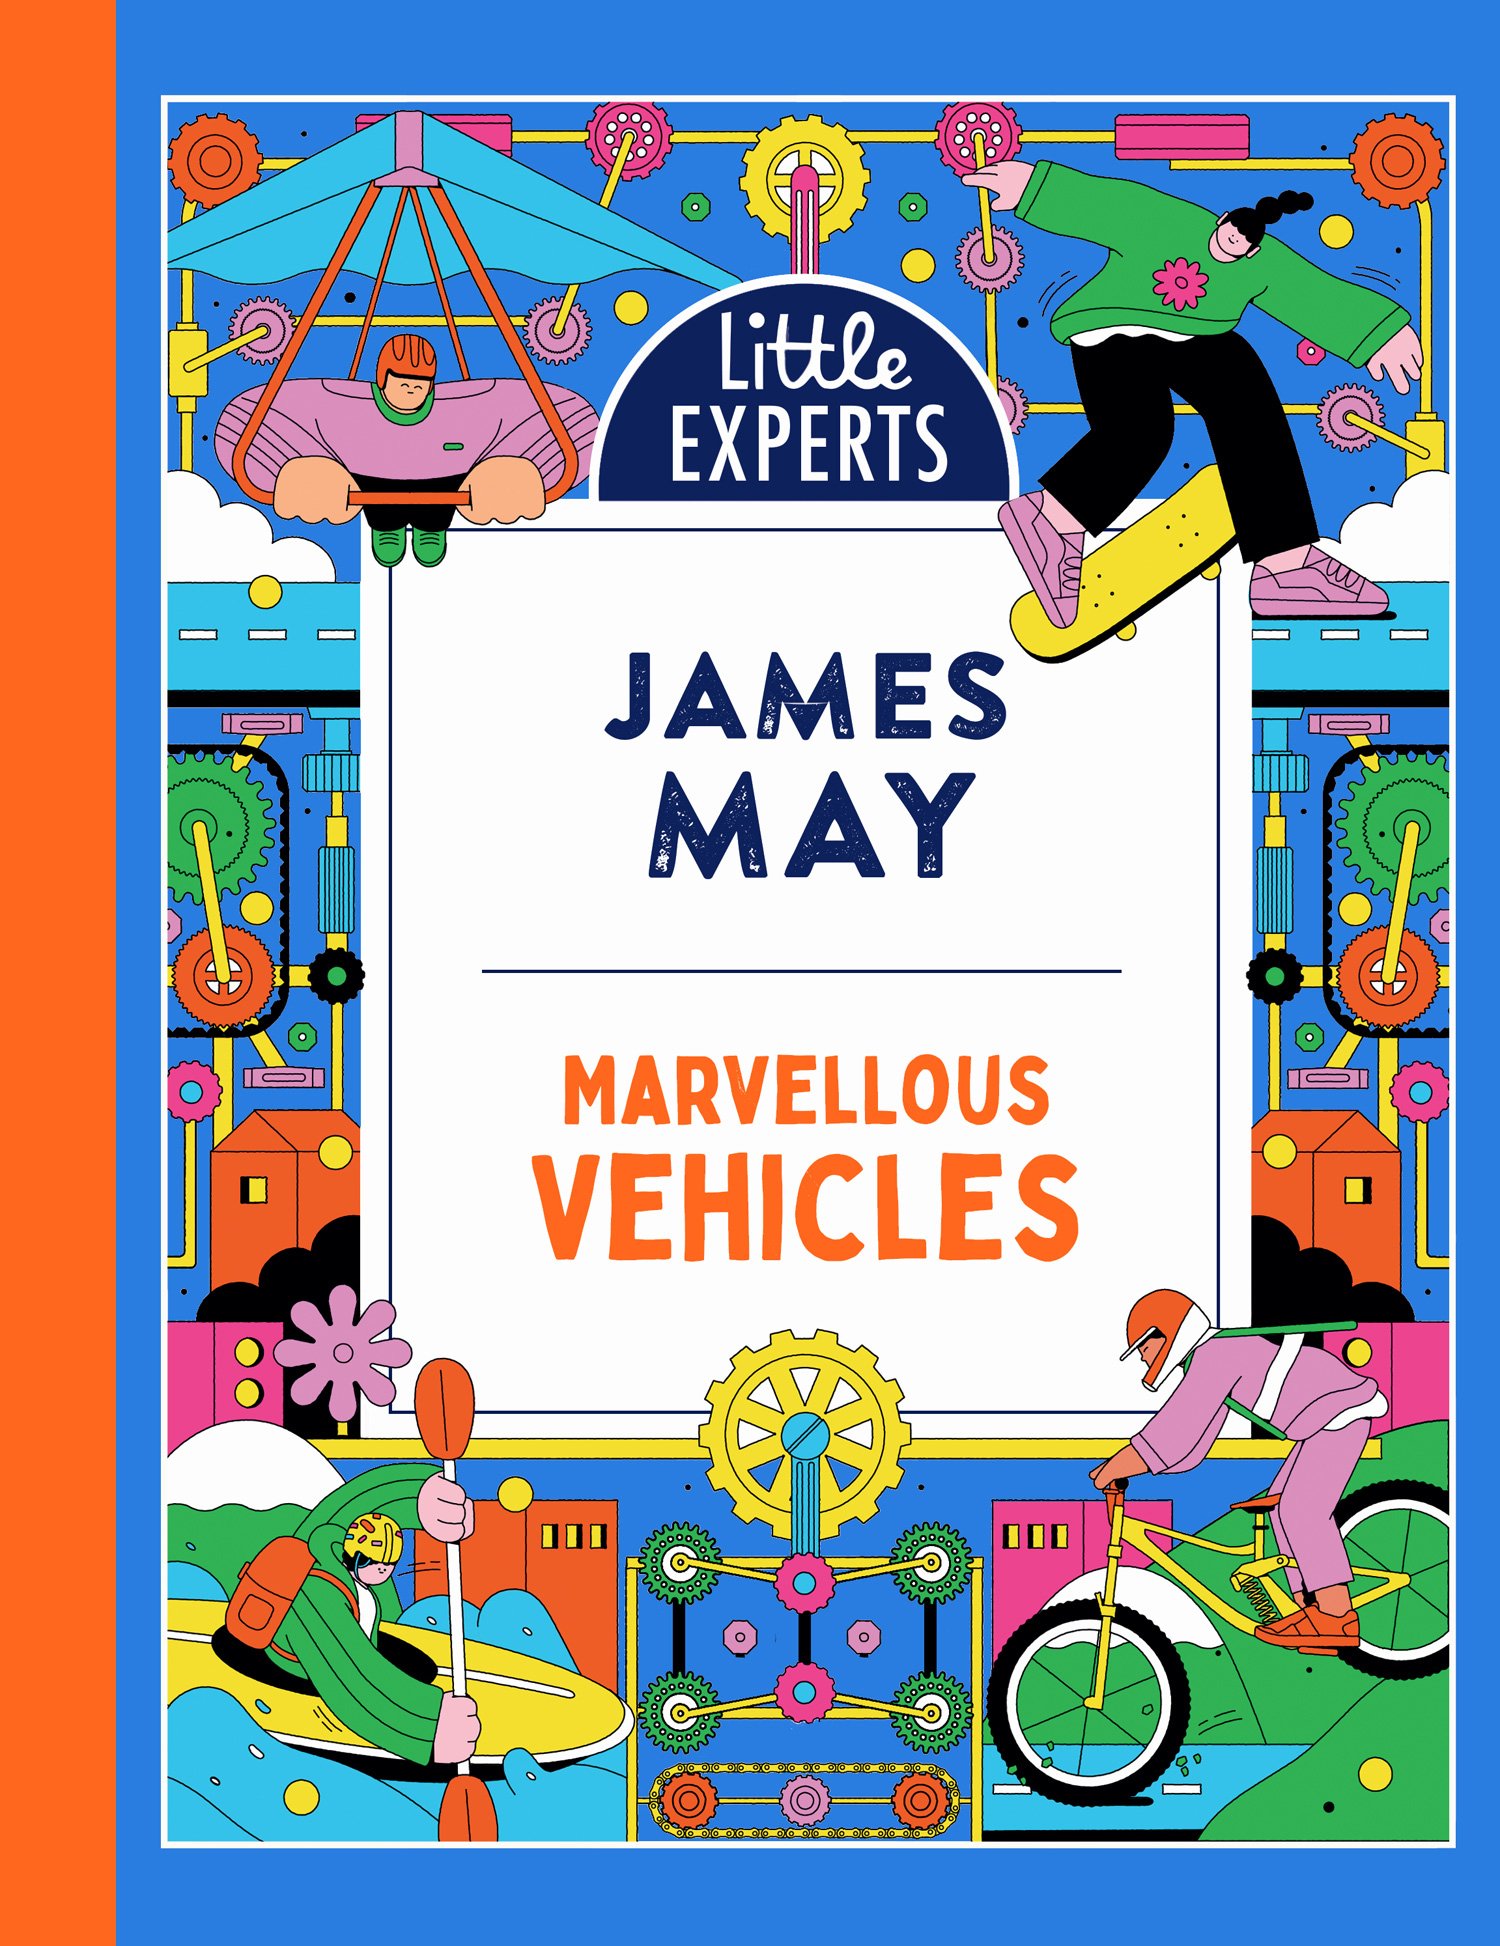 Marvellous Vehicles cover 230693-fcx.jpg